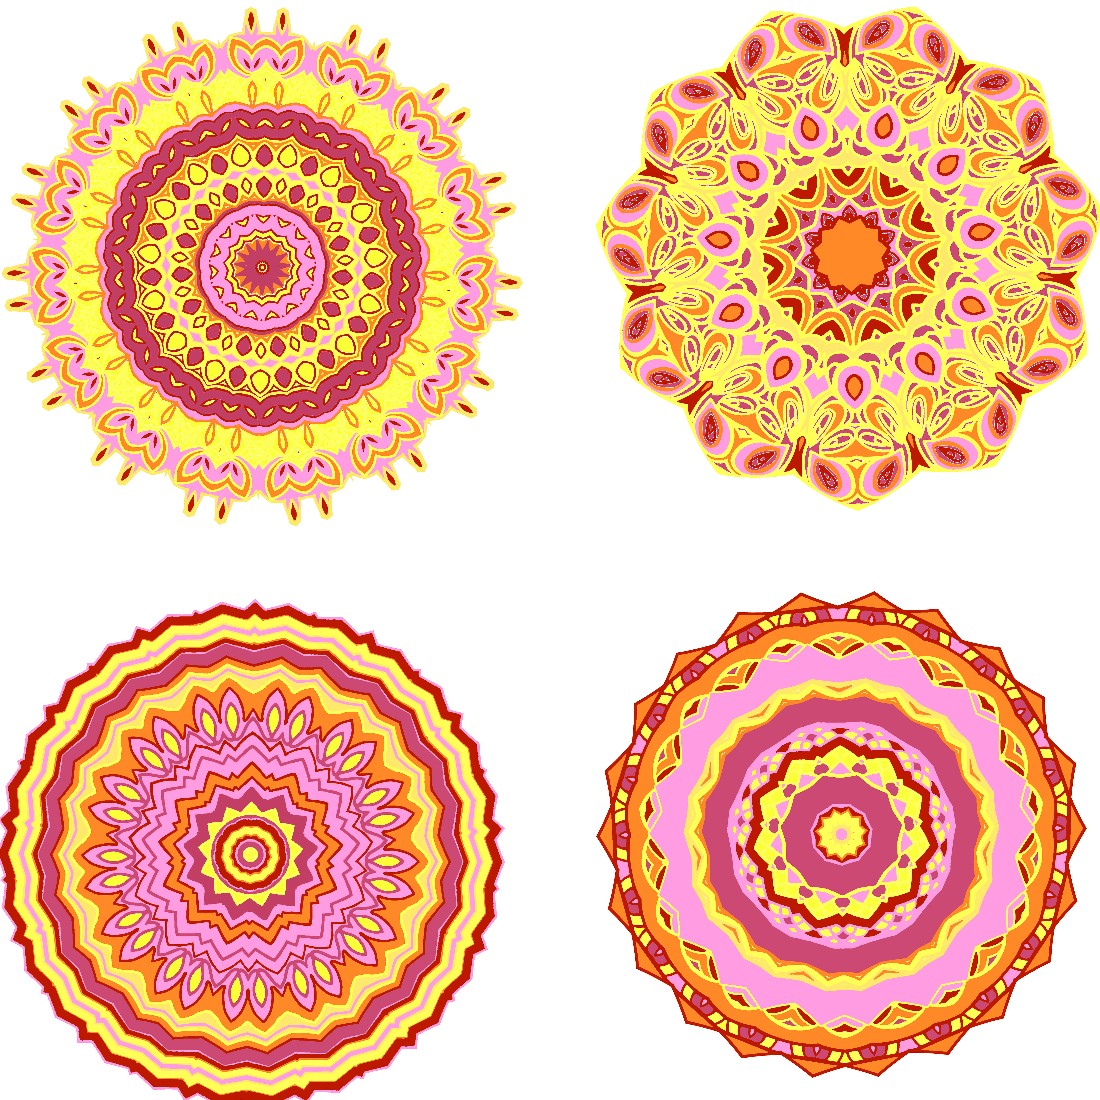 12 Bright Yellow Pink Mandalas cover image.